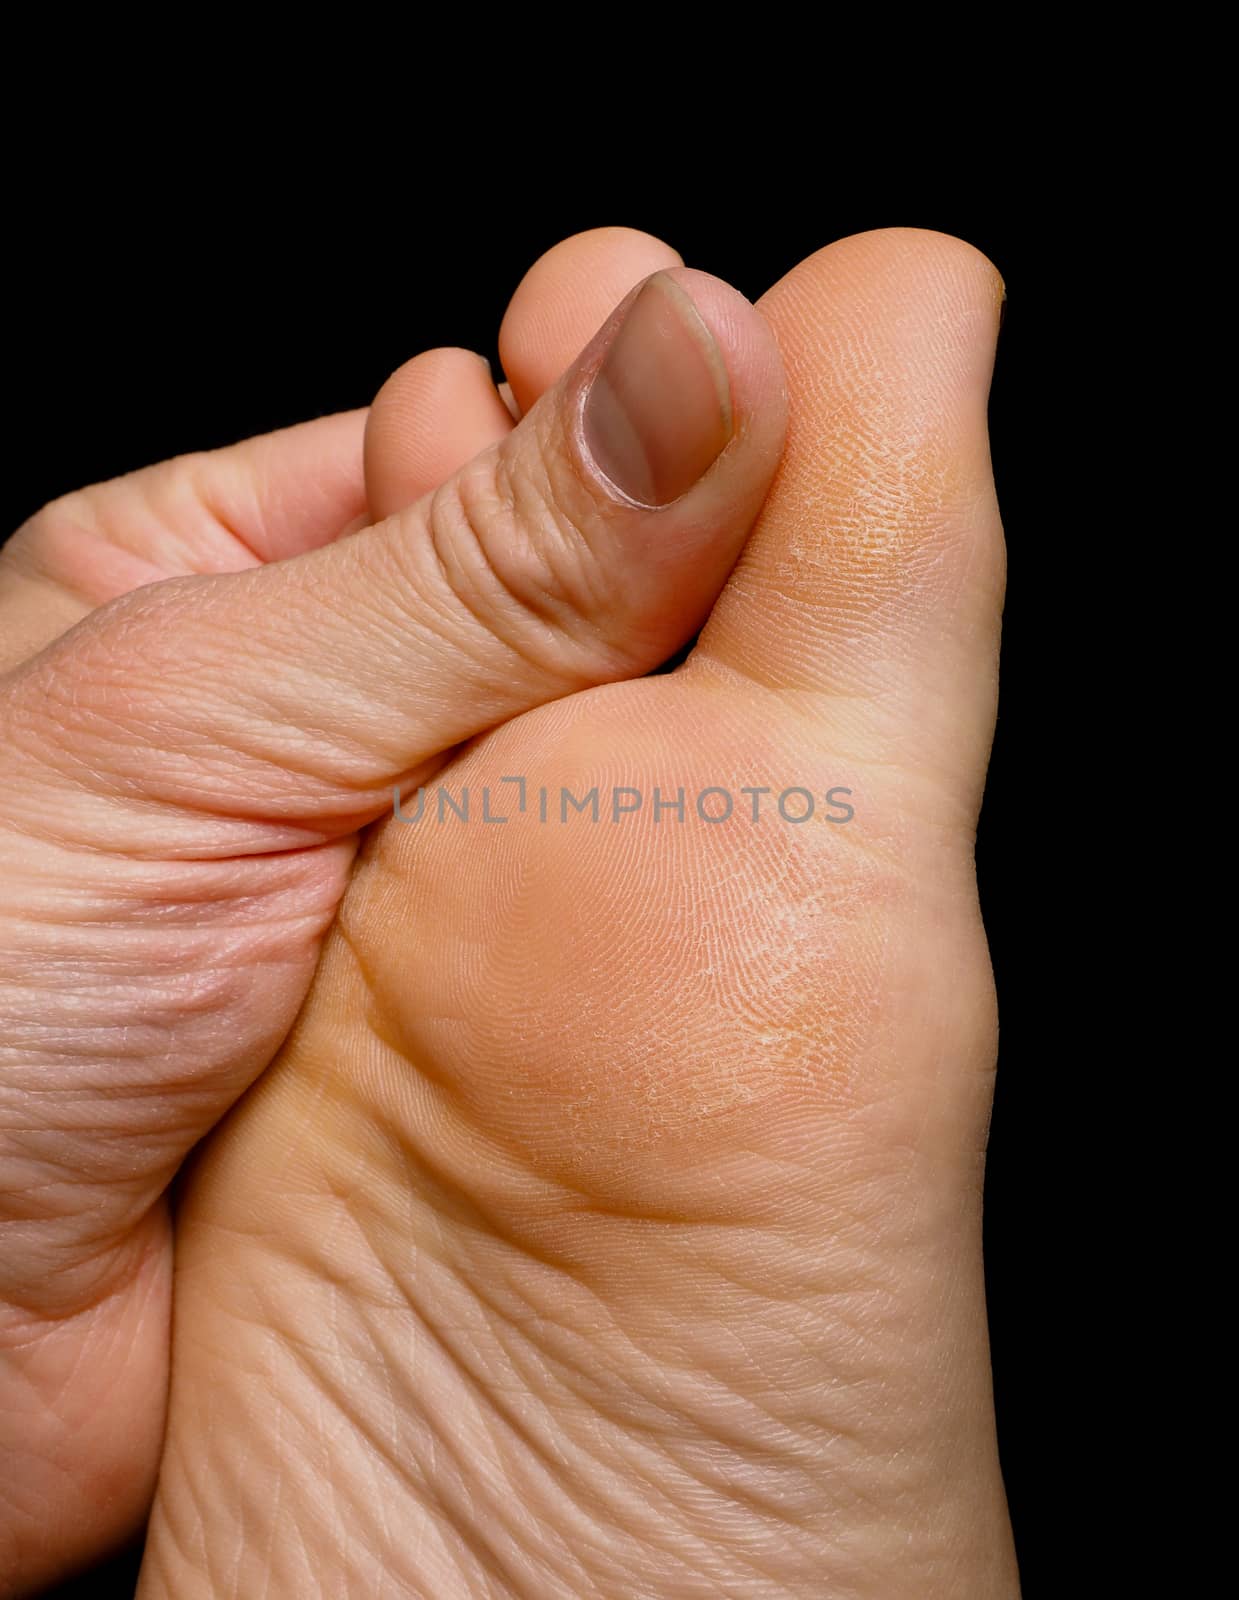 Thumb pressure on big toe massage on dry skin isolated towards black